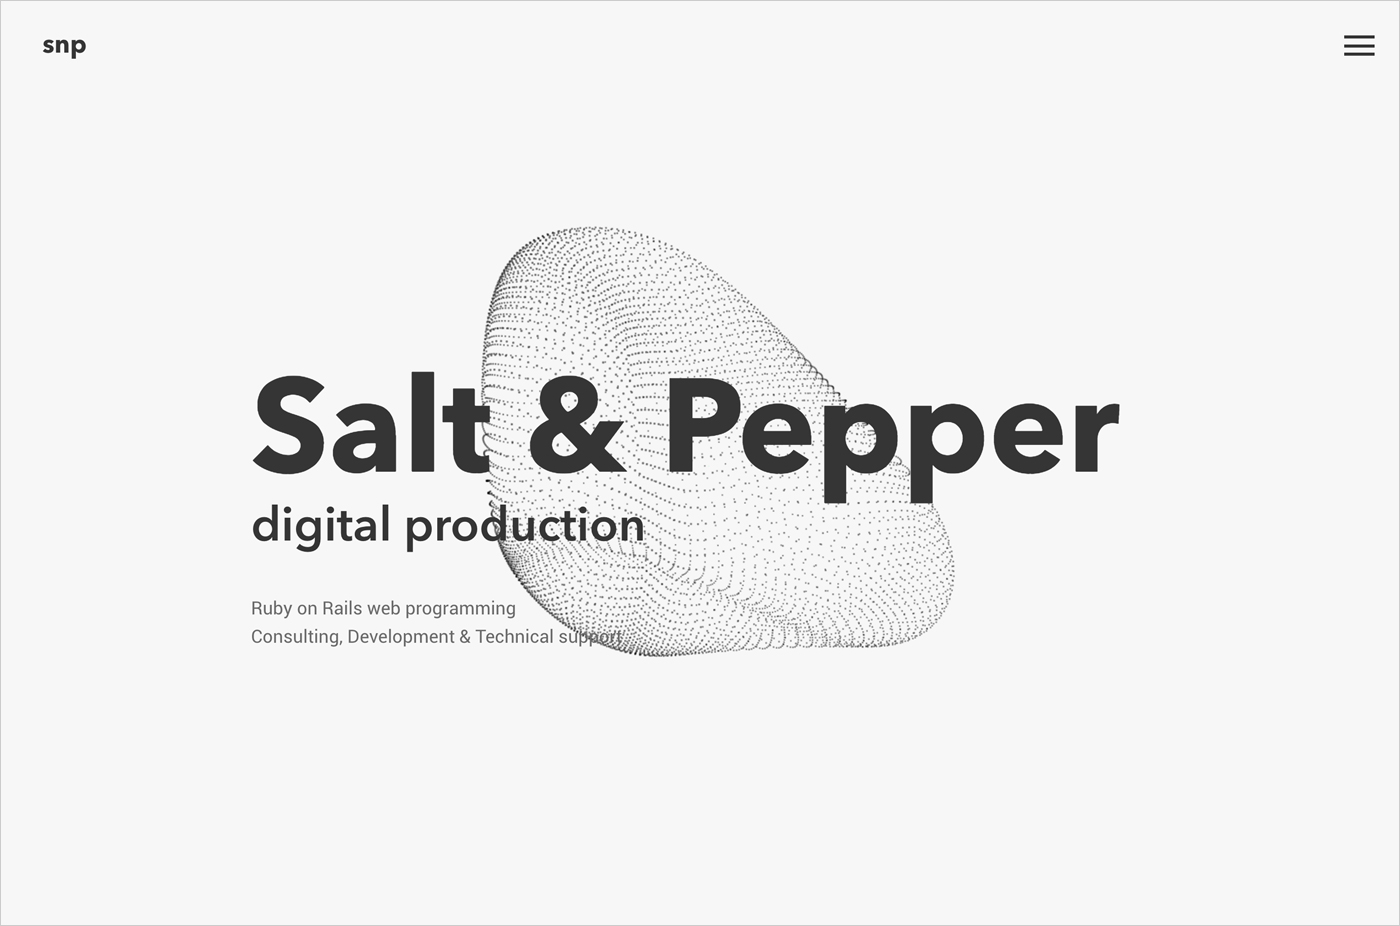 Salt & Pepperウェブサイトの画面キャプチャ画像